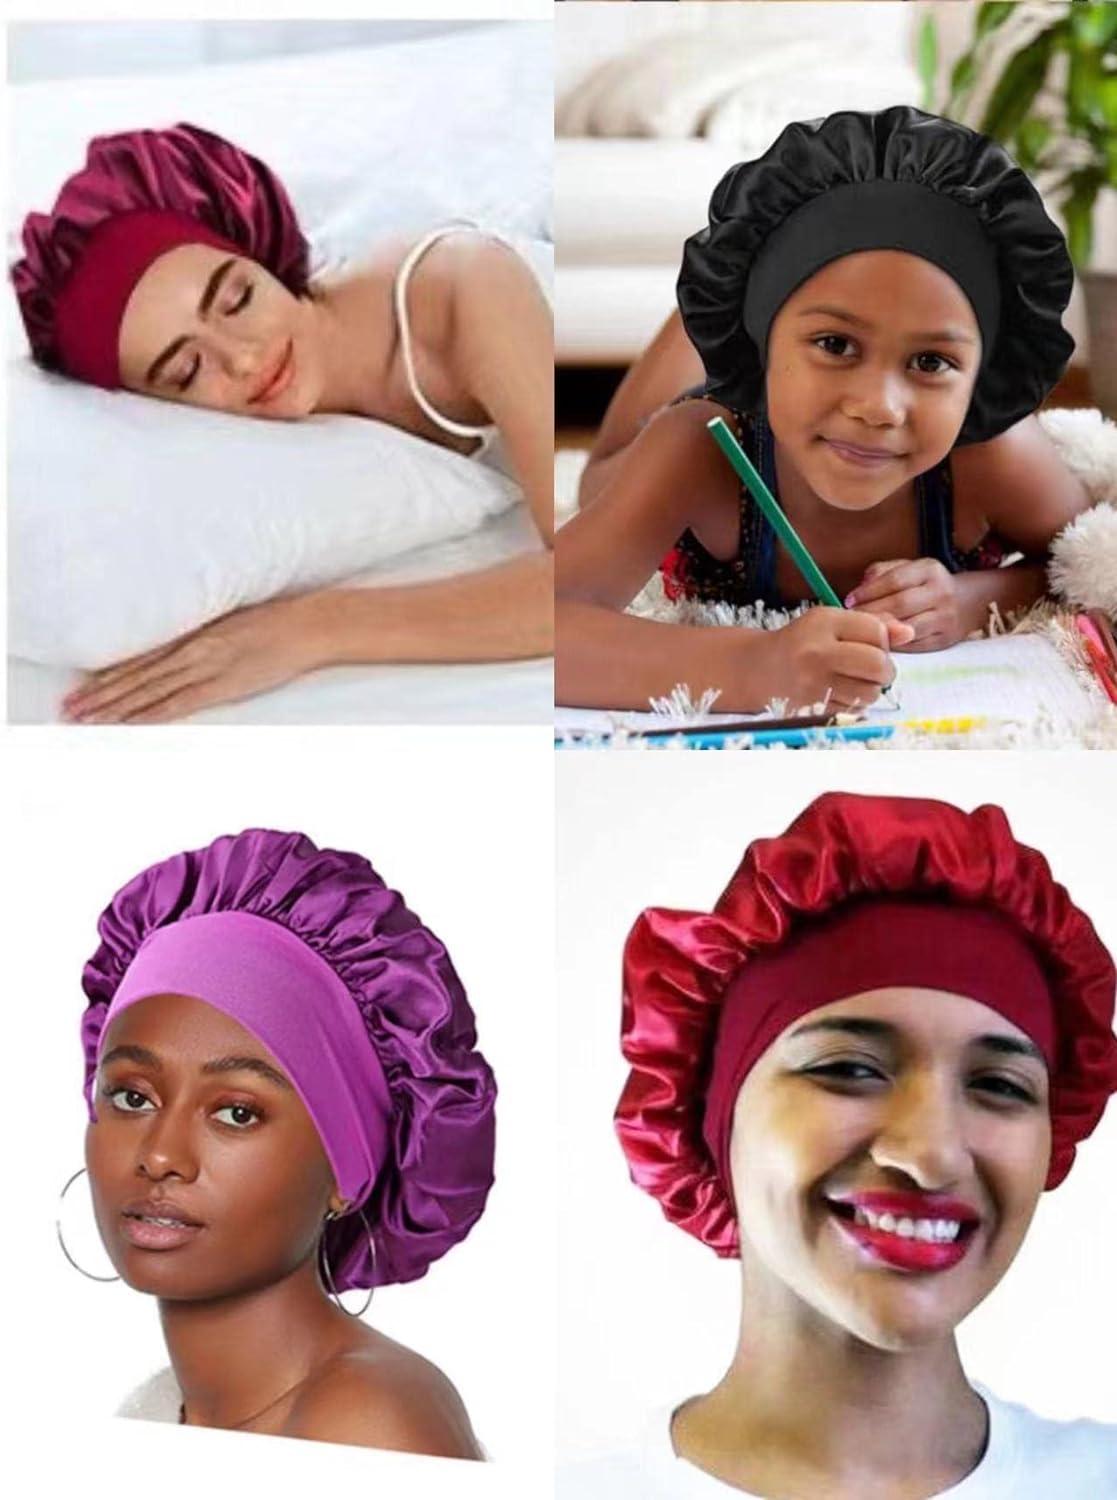 Silk Satin Hair Bonnet for Sleeping, Sleep Bonnet with Elastic Soft  Band,Sleep Bonnet Sleep Cap for Hair Curly Hair Sleeping Natural Hair